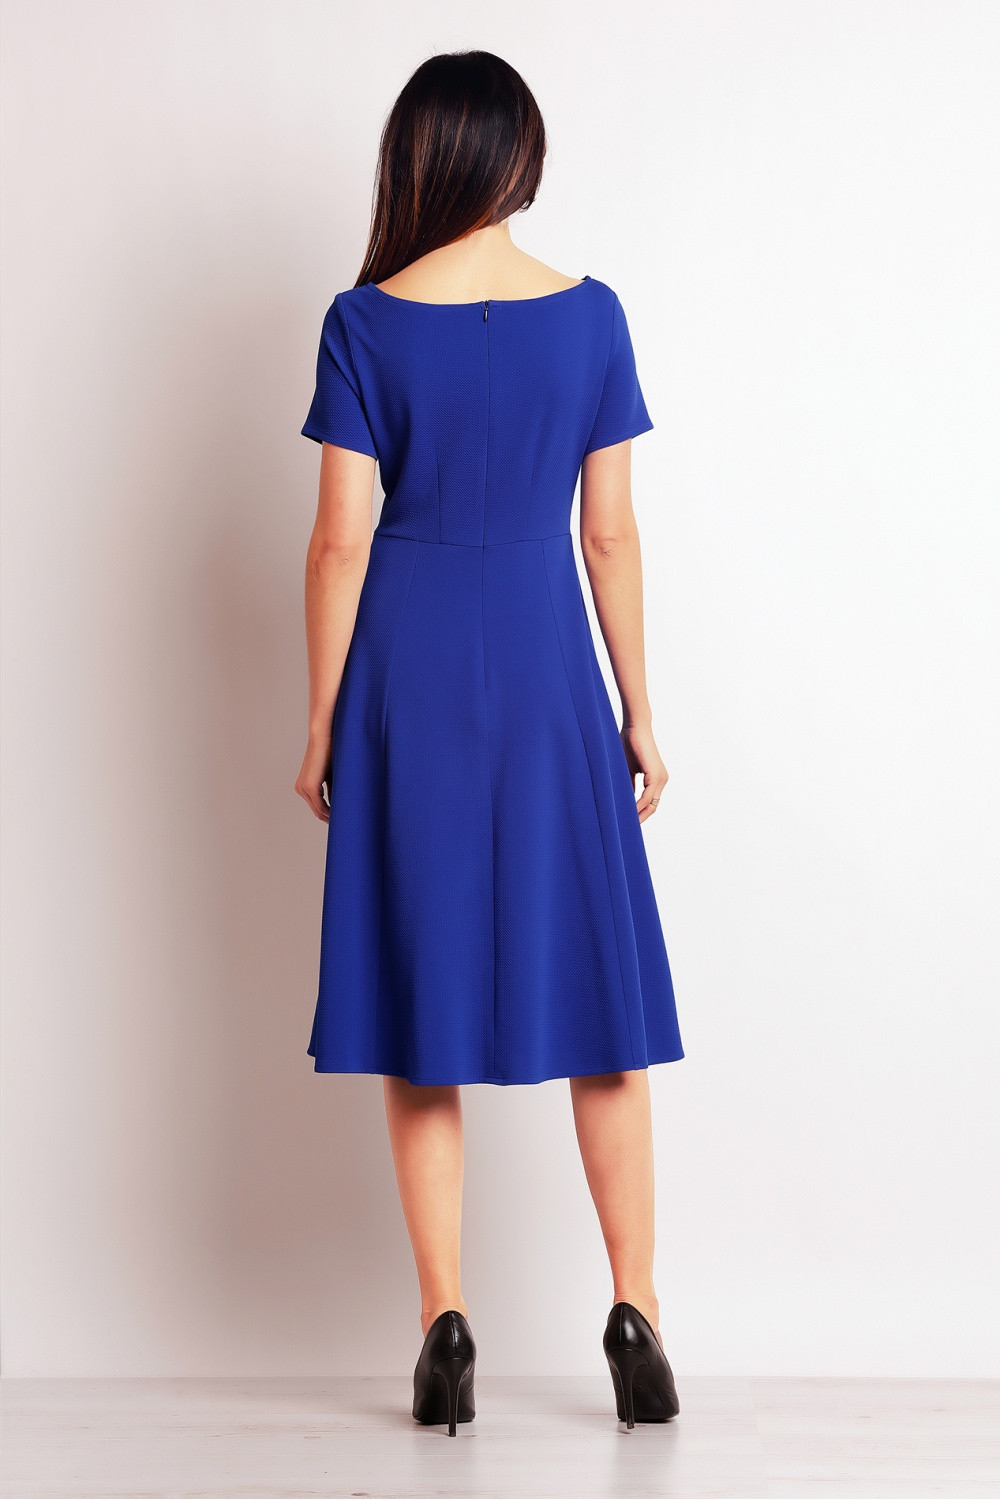 Dámské denní šaty model M099 nebesky modrá - Infinite You S